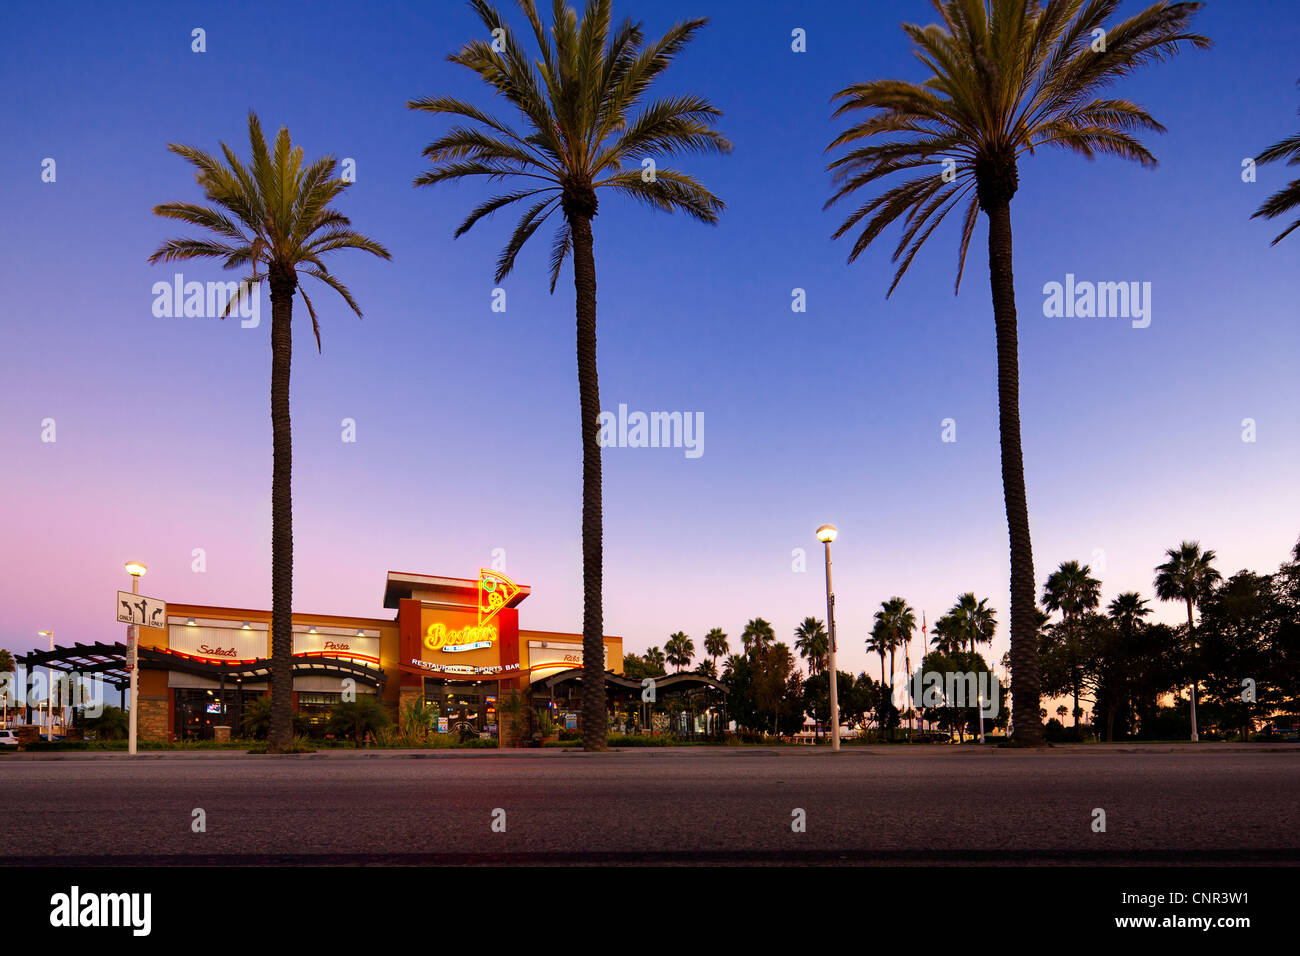 Long Beach, Californie Gourmet Pizza Restaurant & Bar des Sports avec des palmiers au crépuscule Banque D'Images